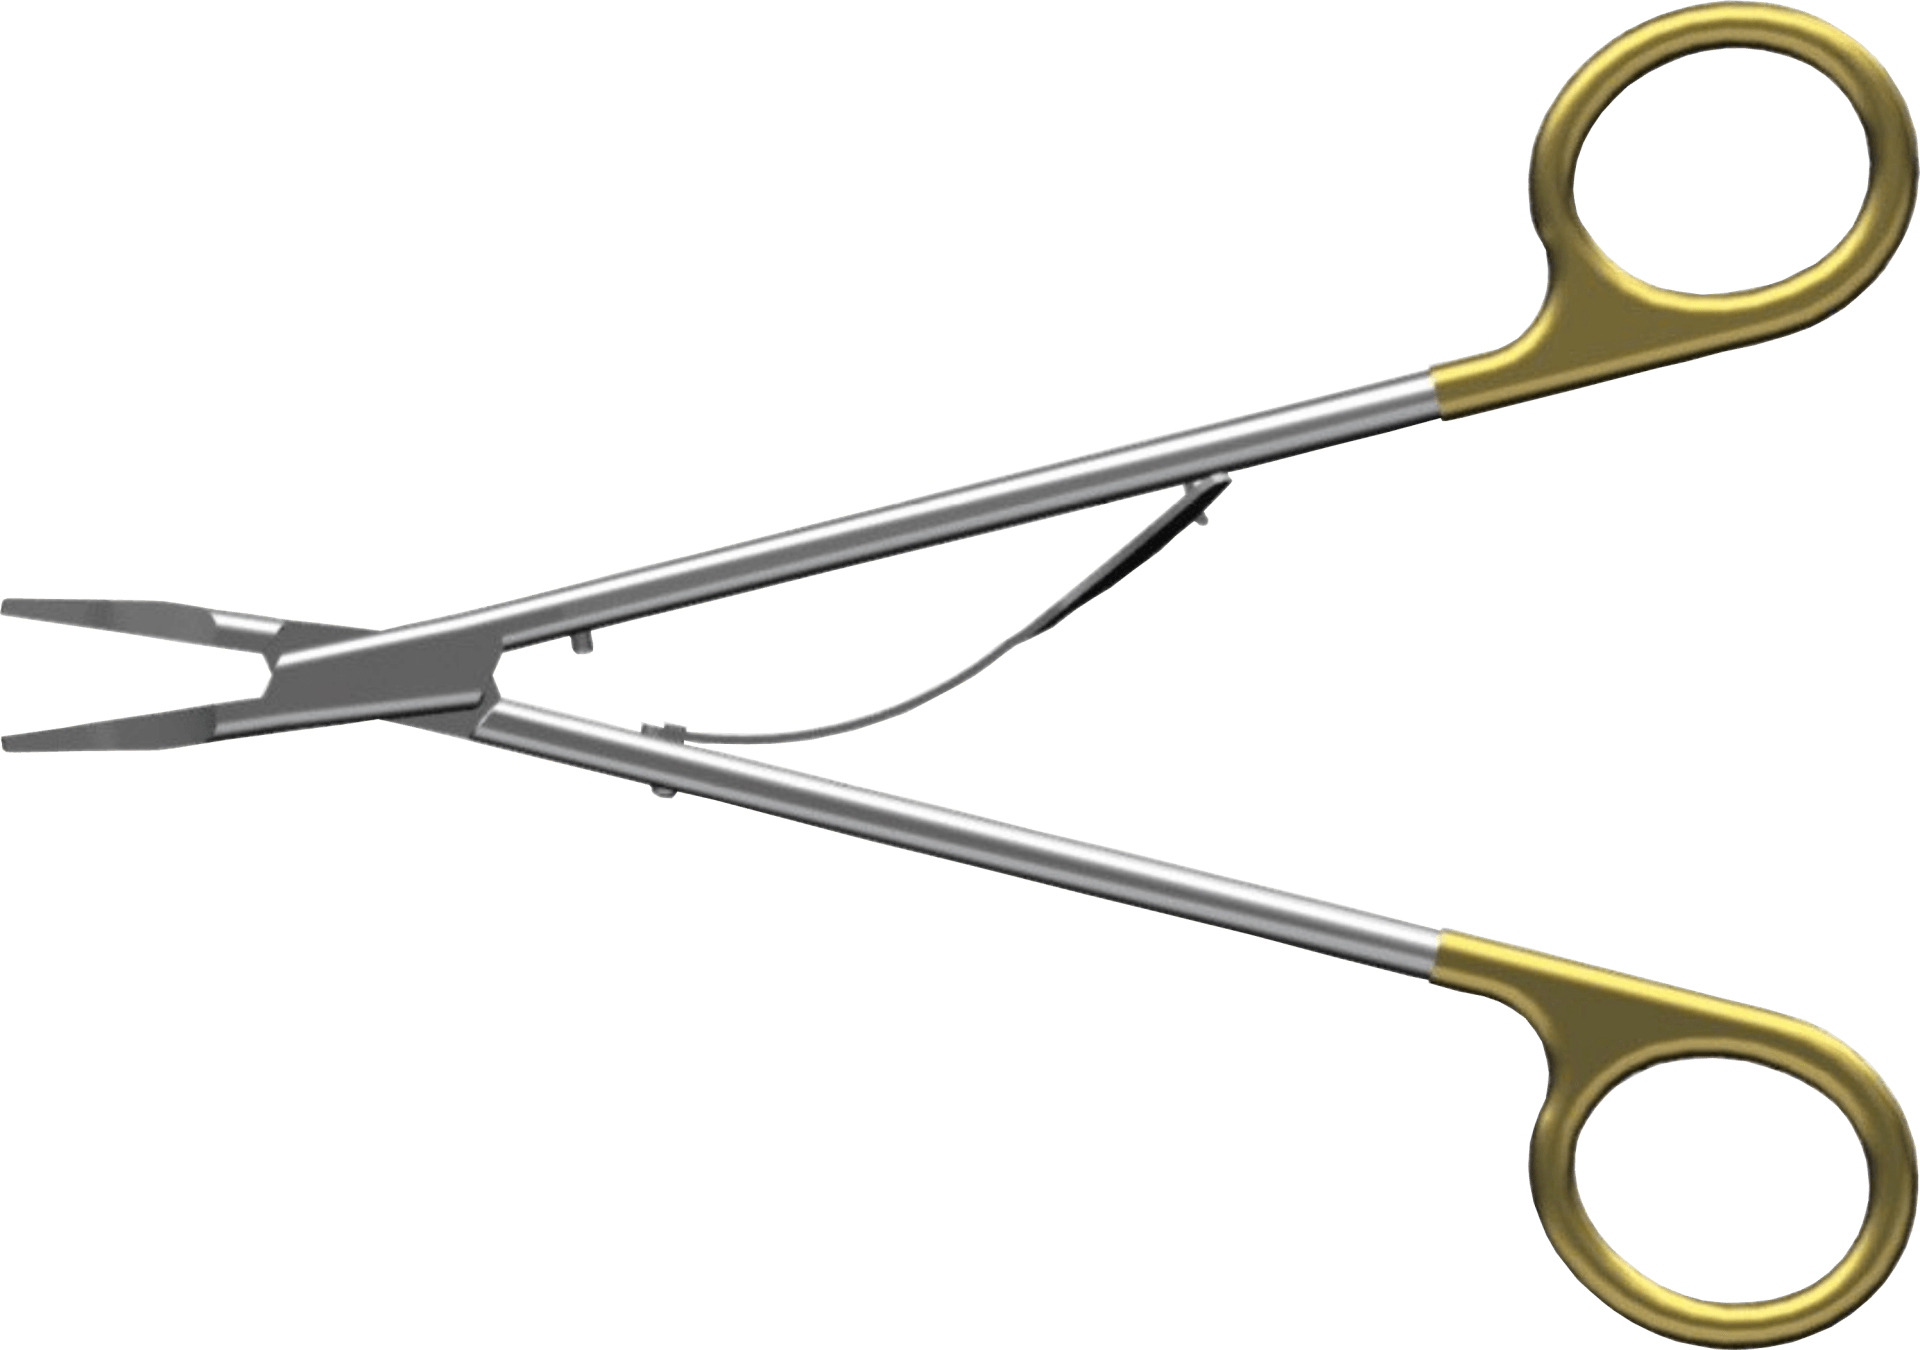 Locamed open surgery titanium clip applier, LT range